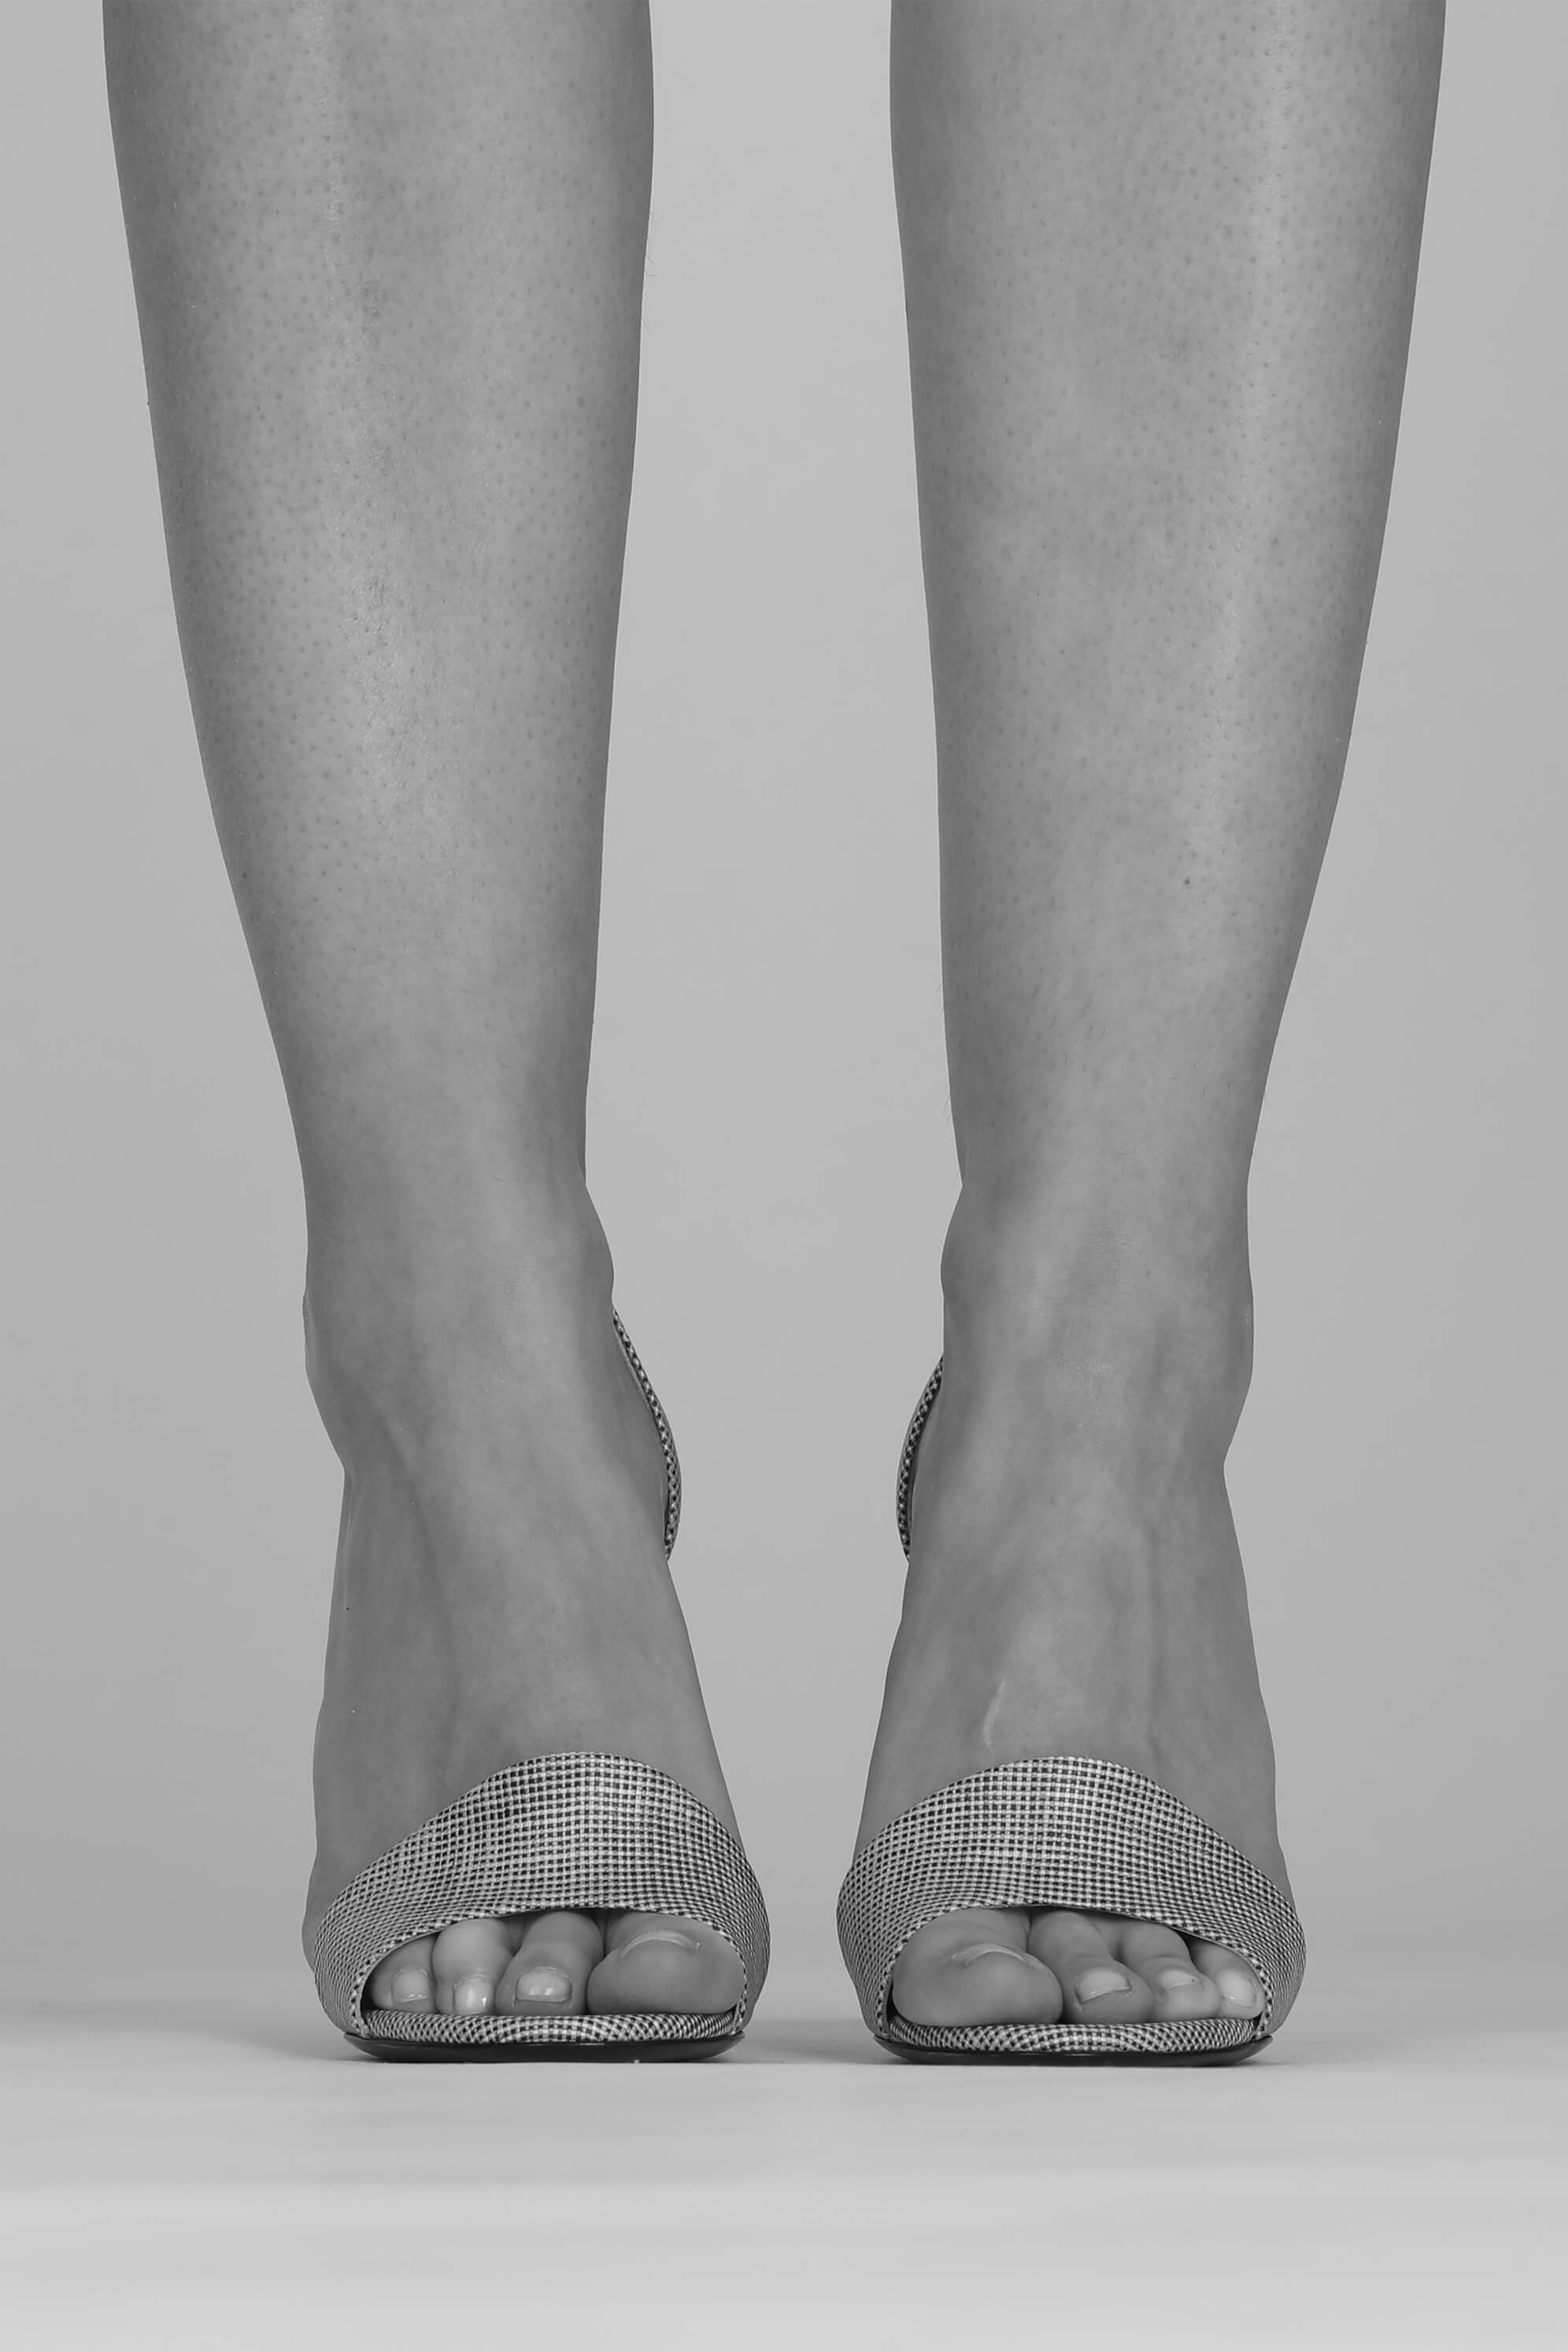 Sandale femme talon haut en lin enduit  - Photographe Terence Hassen - La Ligne Numérotée, des accessoires femme haut de gamme.